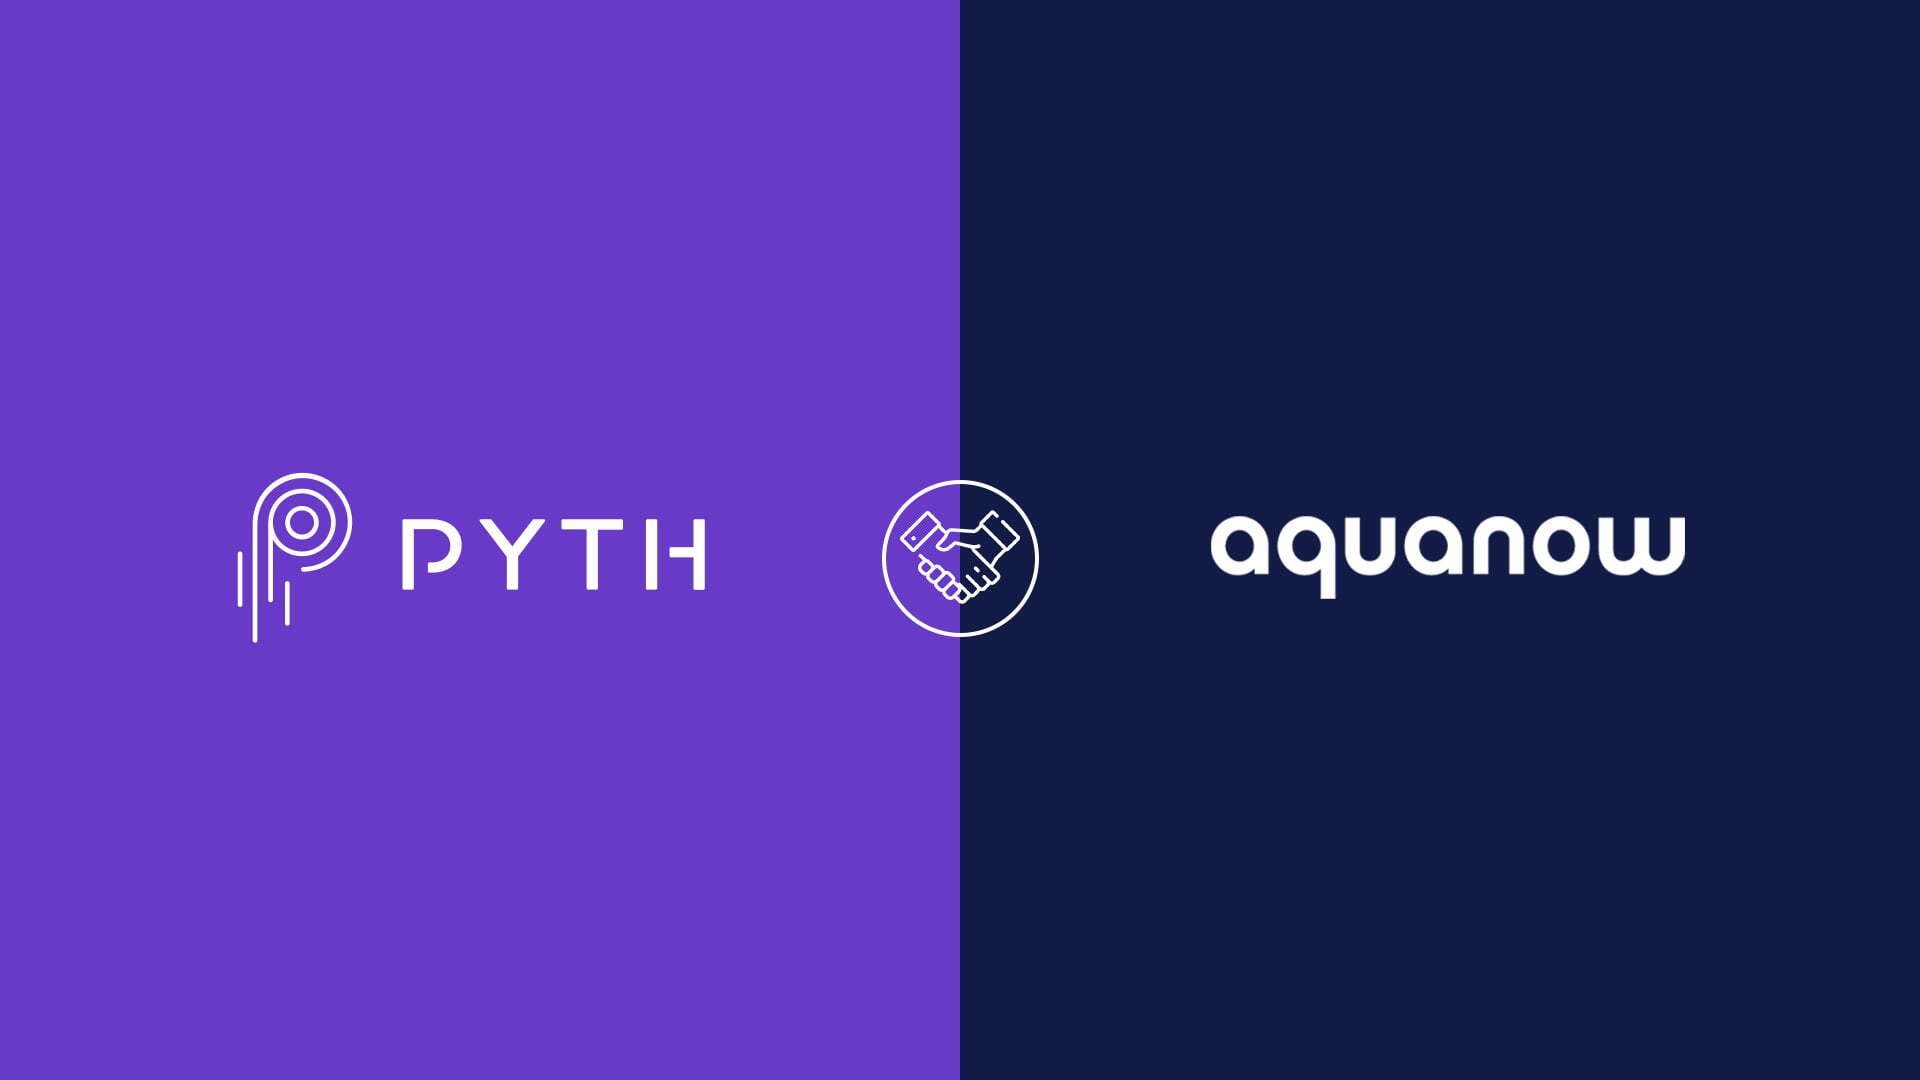 Aquanow Hợp Tác Cùng Pyth Network Với Tư Cách Là Nhà Cung Cấp Dữ Liệu